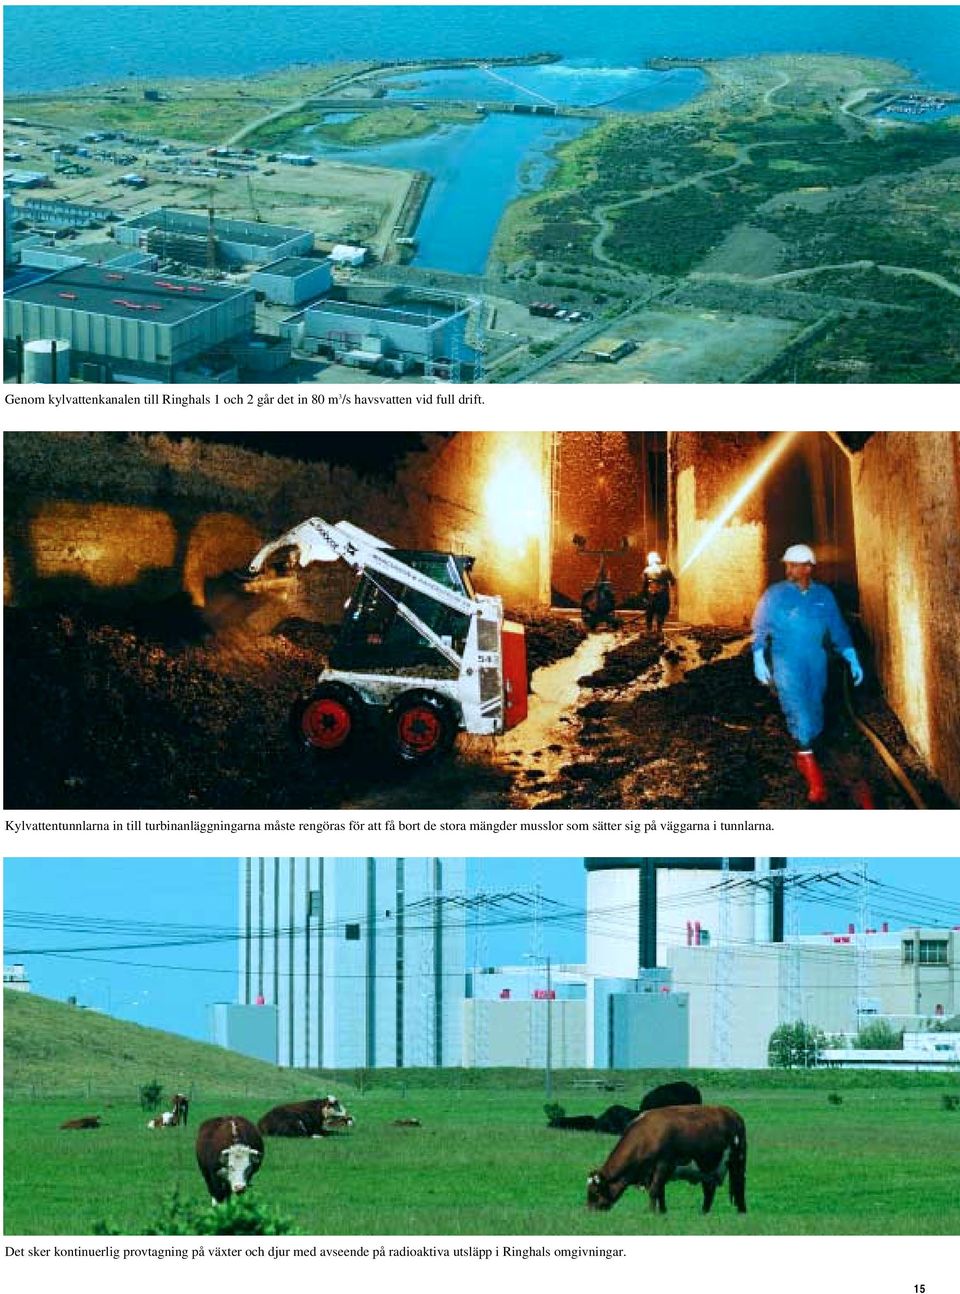 Kylvattentunnlarna in till turbinanläggningarna måste rengöras för att få bort de stora